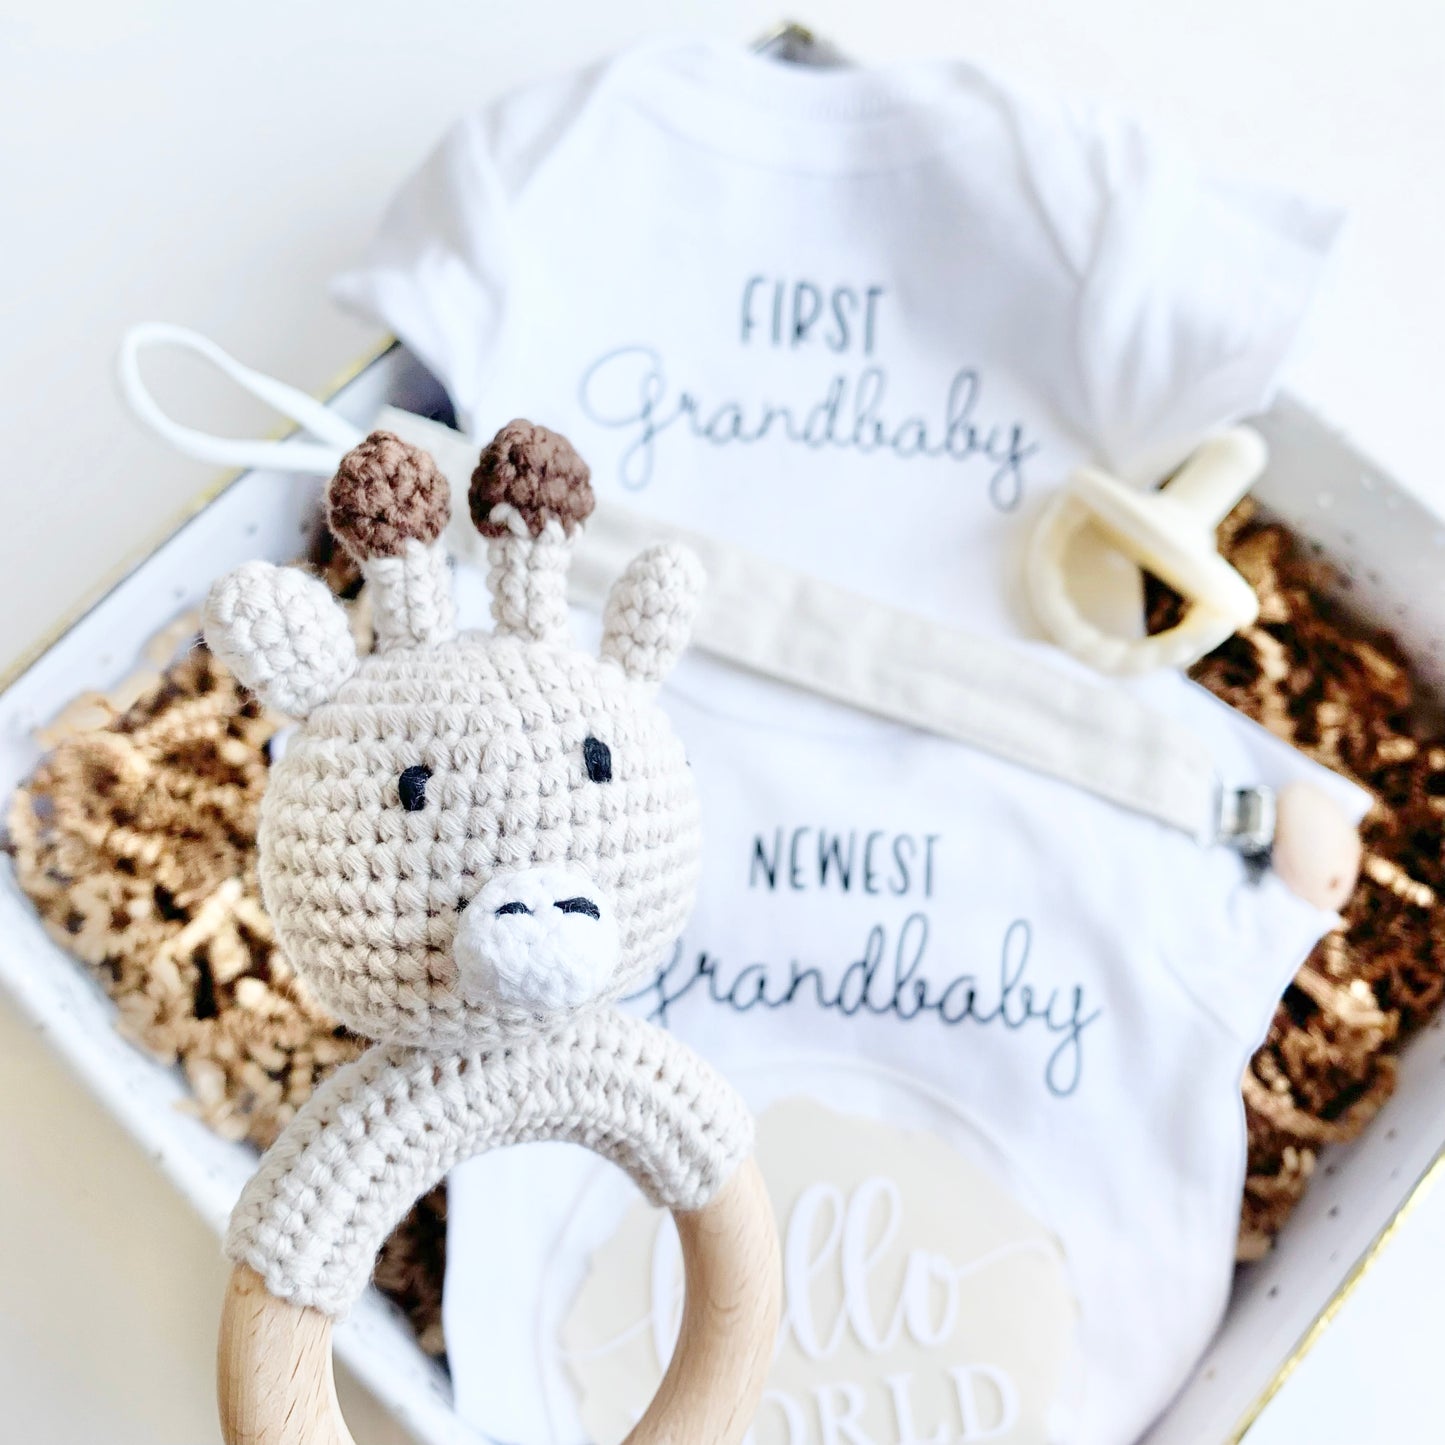 Promoted to Grandma, Grandpa - First Grandchild, newest grandbaby Pregnancy Announcement Box